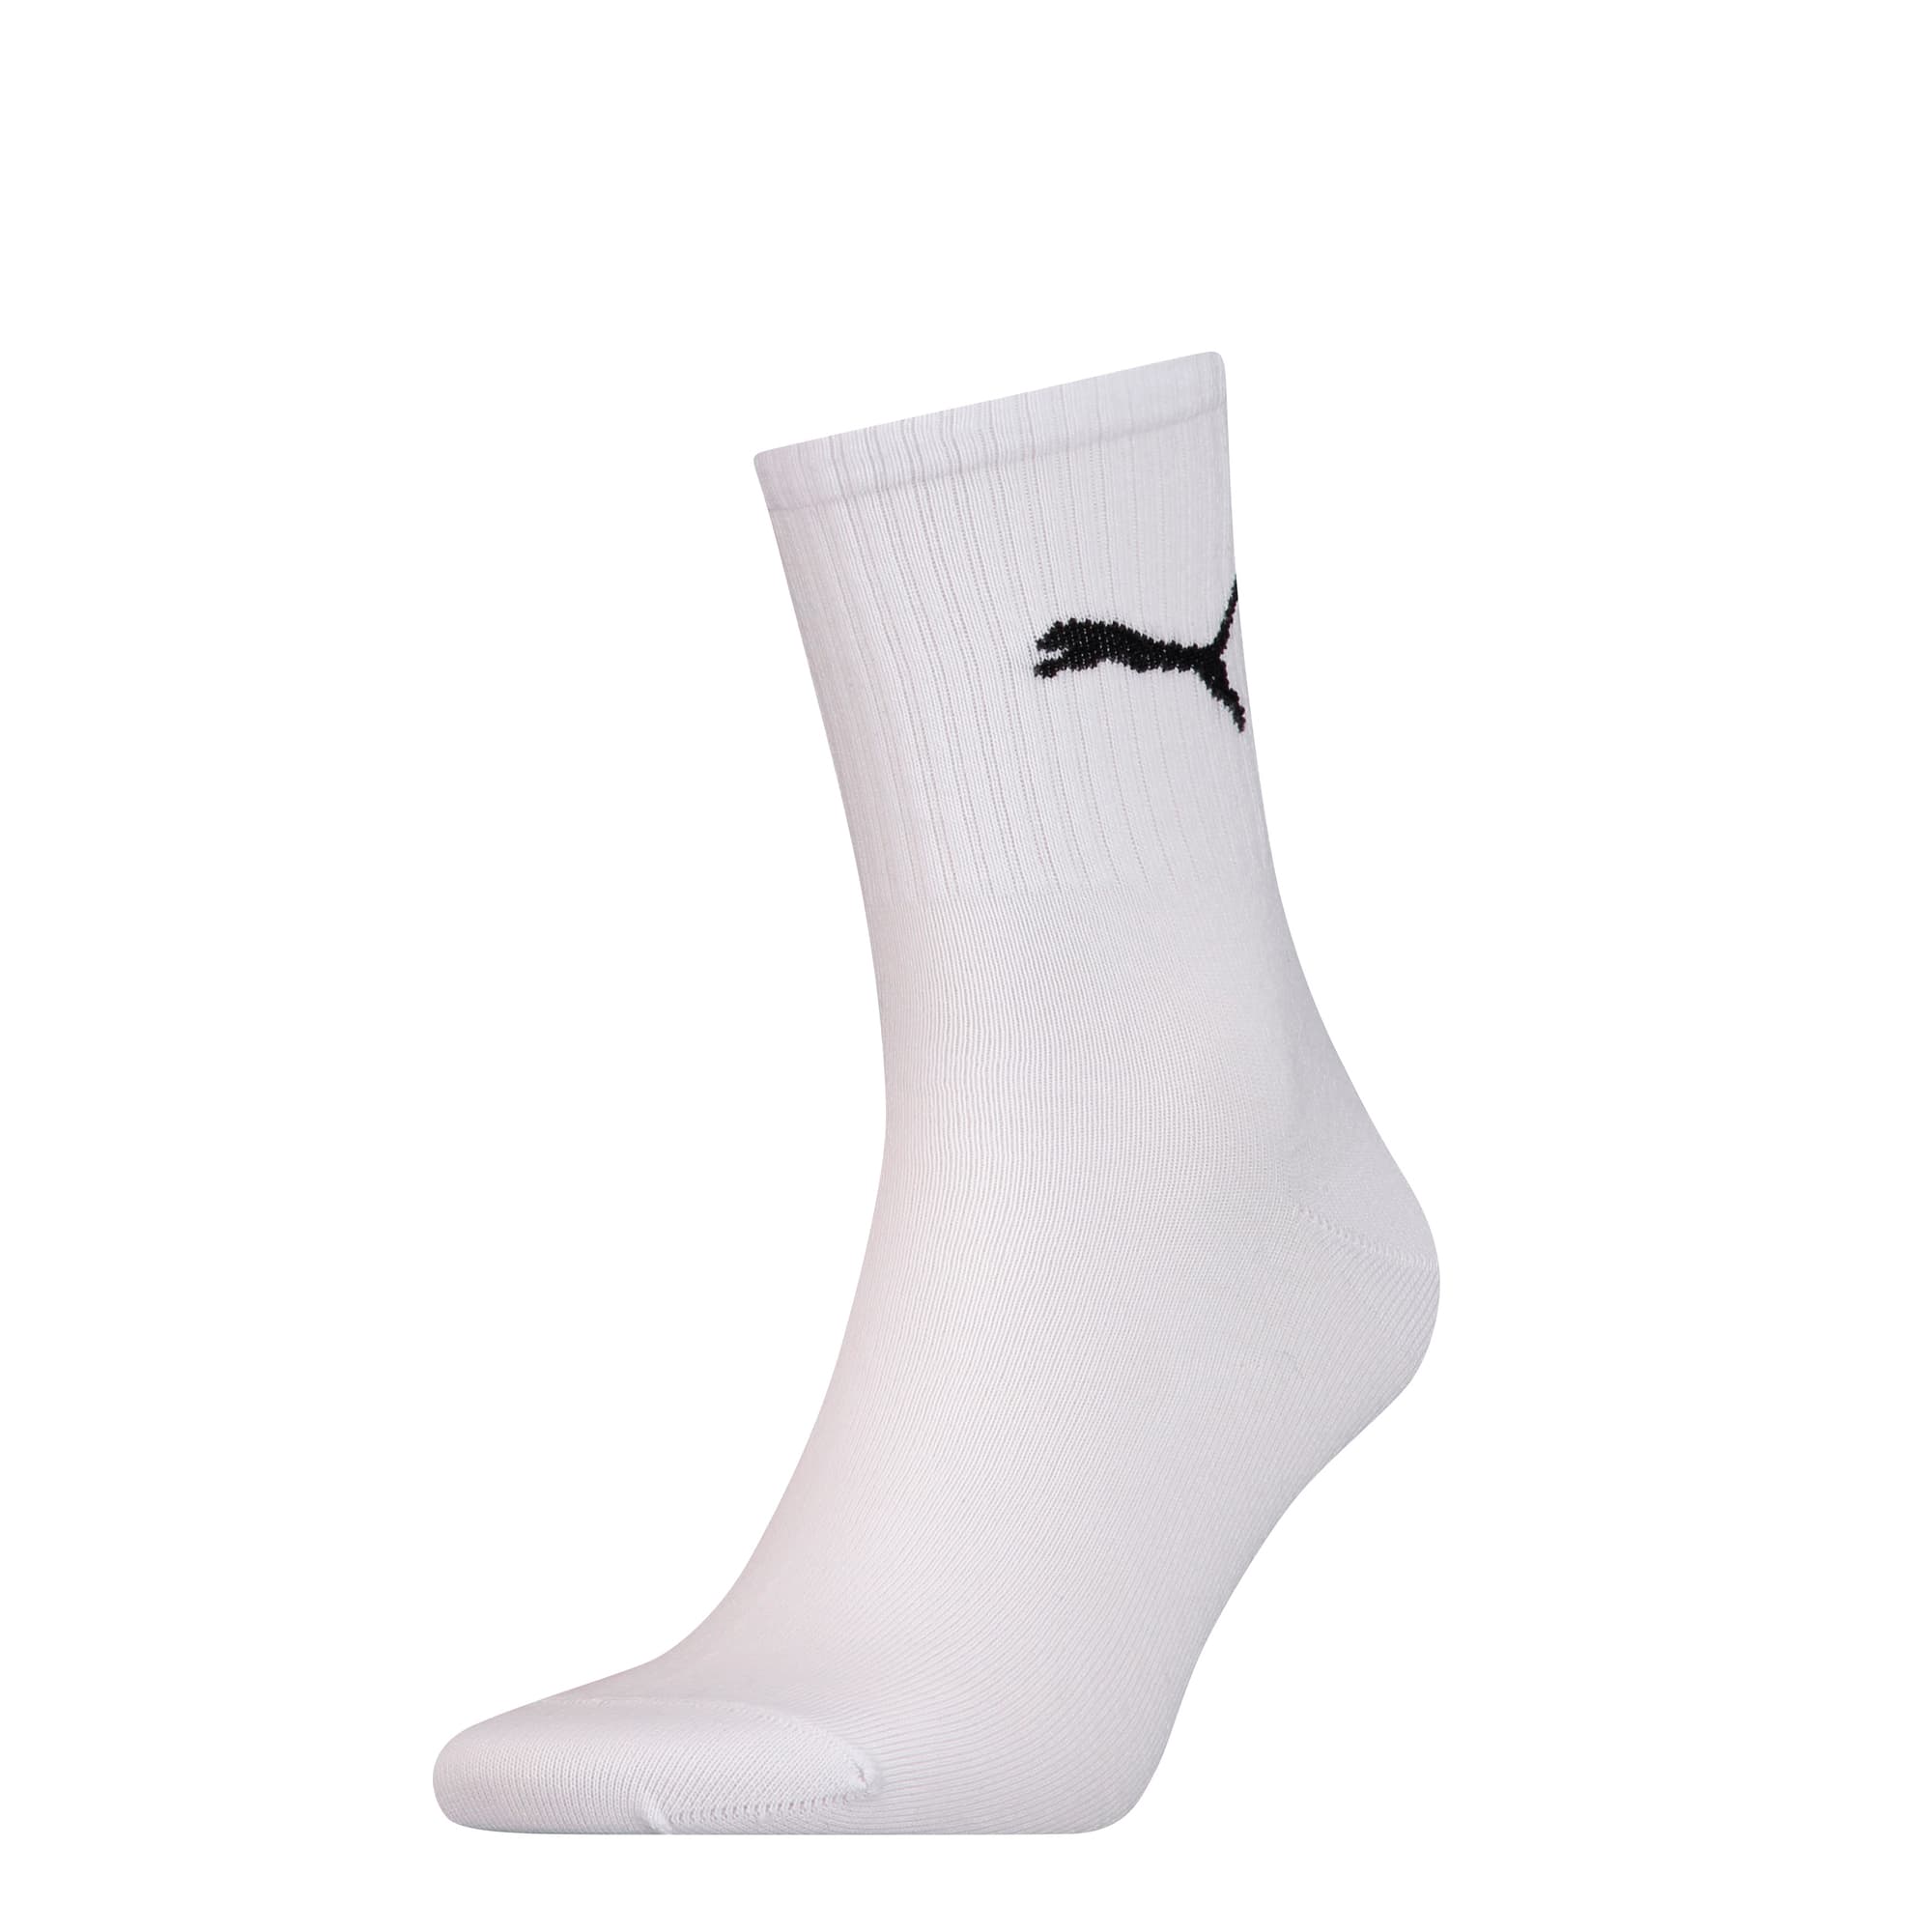 Basic Sport Socks 1 Pack, white, large-SEA